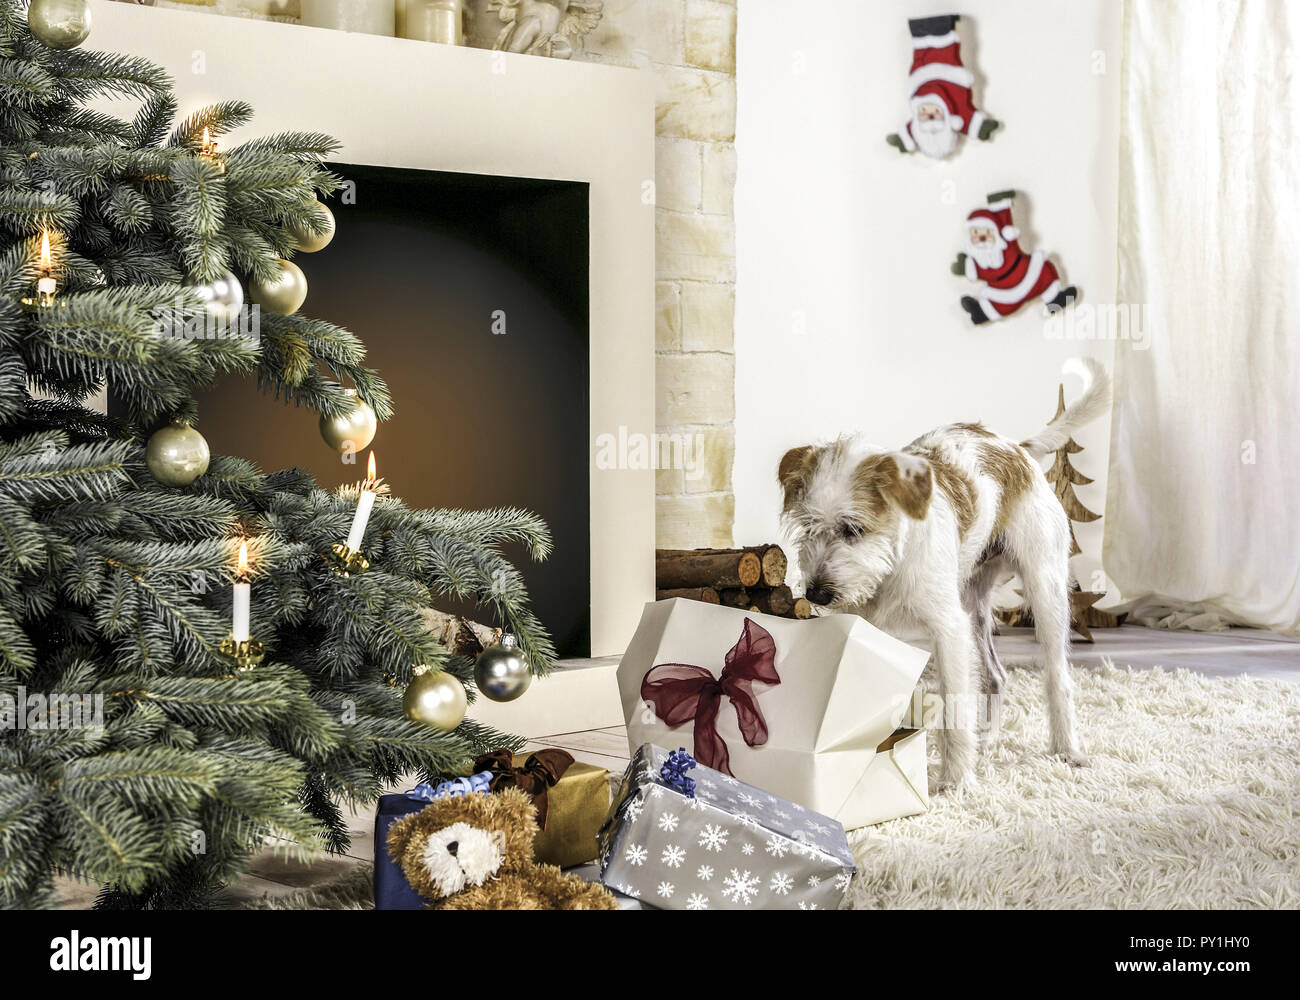 Hund an Paeckchen neben Weihnachtsbaum Stock Photo